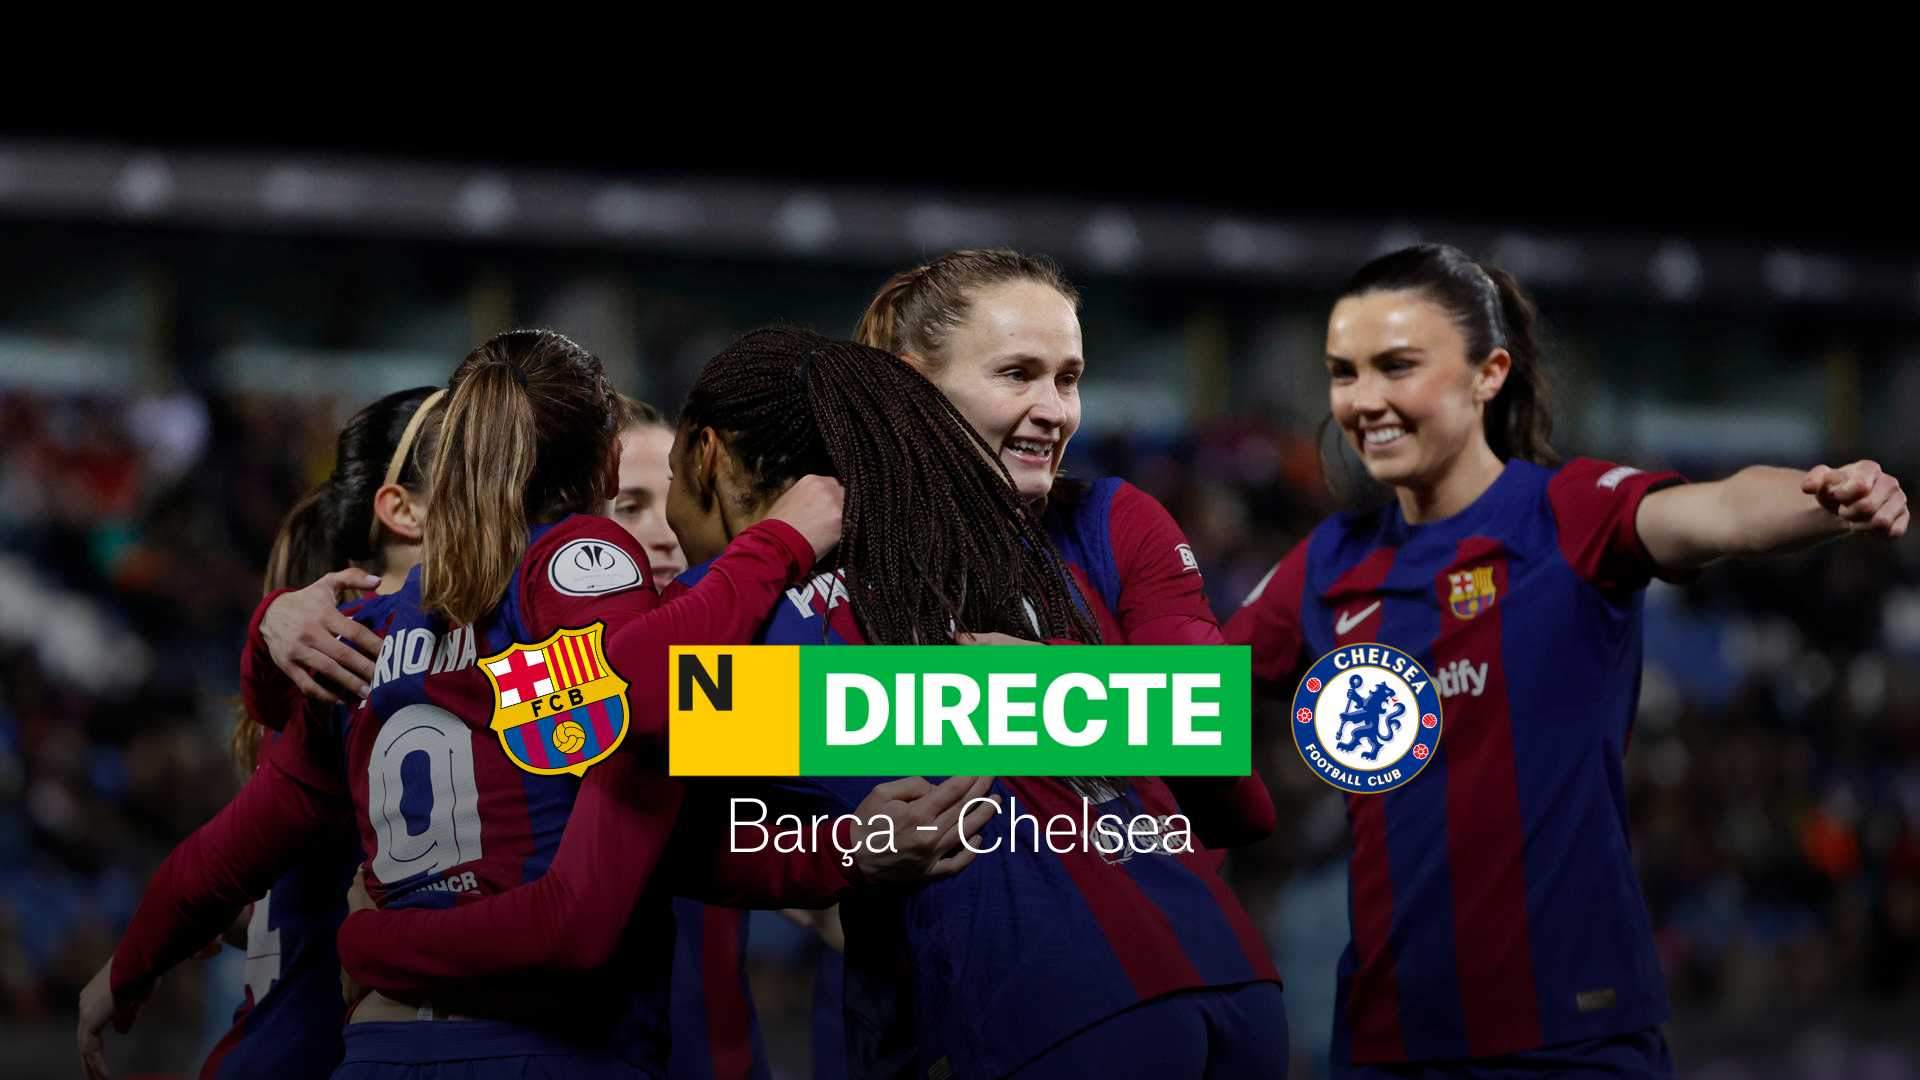 Barça - Chelsea de la Champions League femenina, DIRECTO | Resultado, resumen y goles